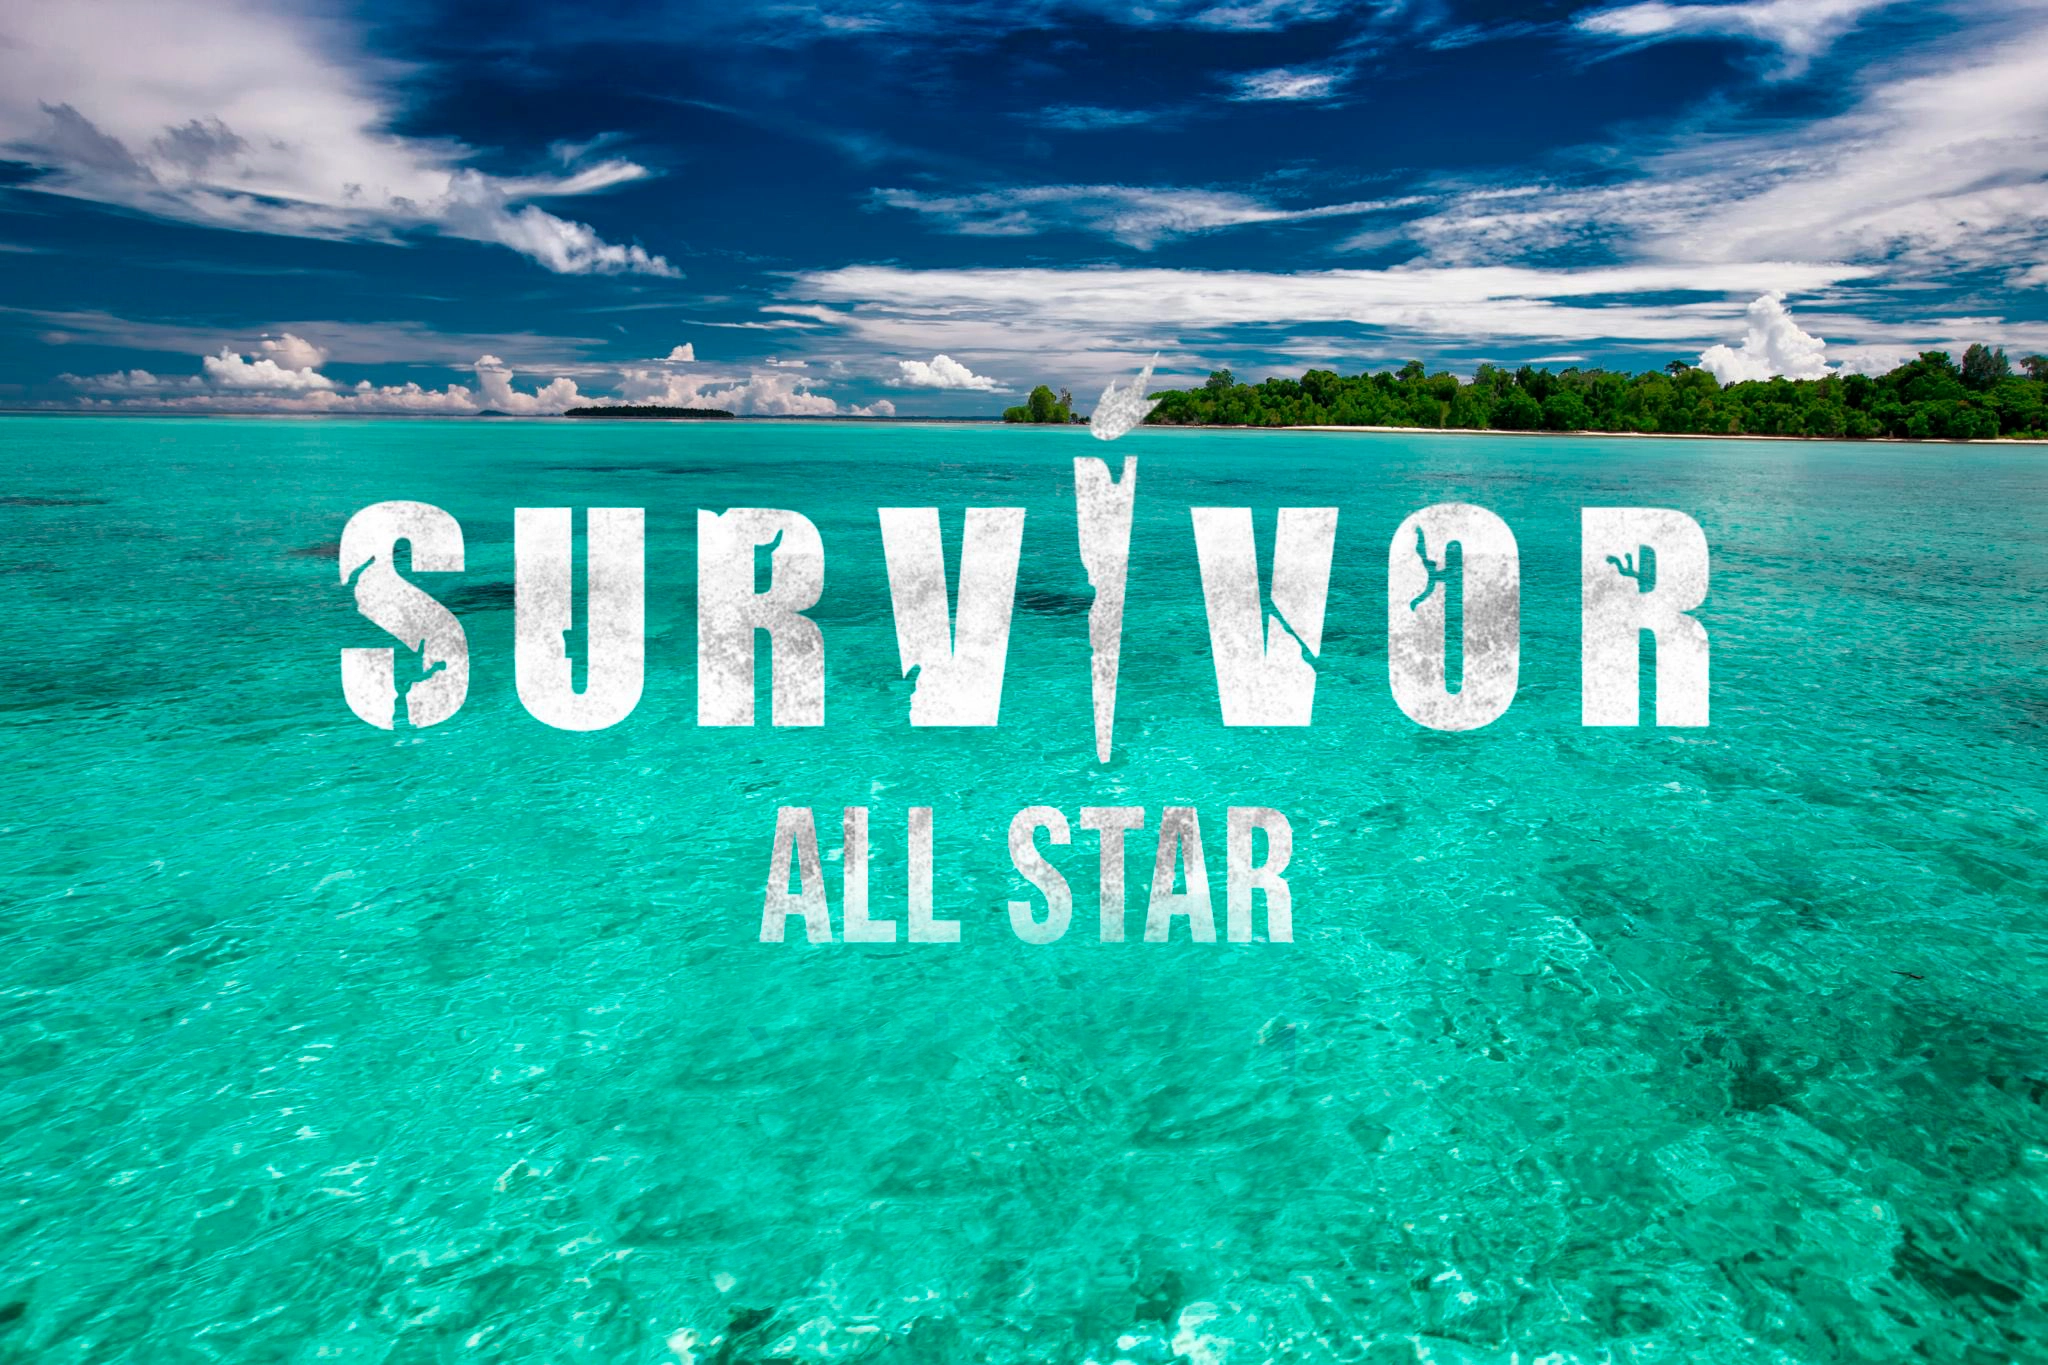 Survivor dokunulmazlık oyununu kim kazandı? 7 Şubat Survivor All Star'da dokunulmazlık oyununu kazanan hangi takım oldu?